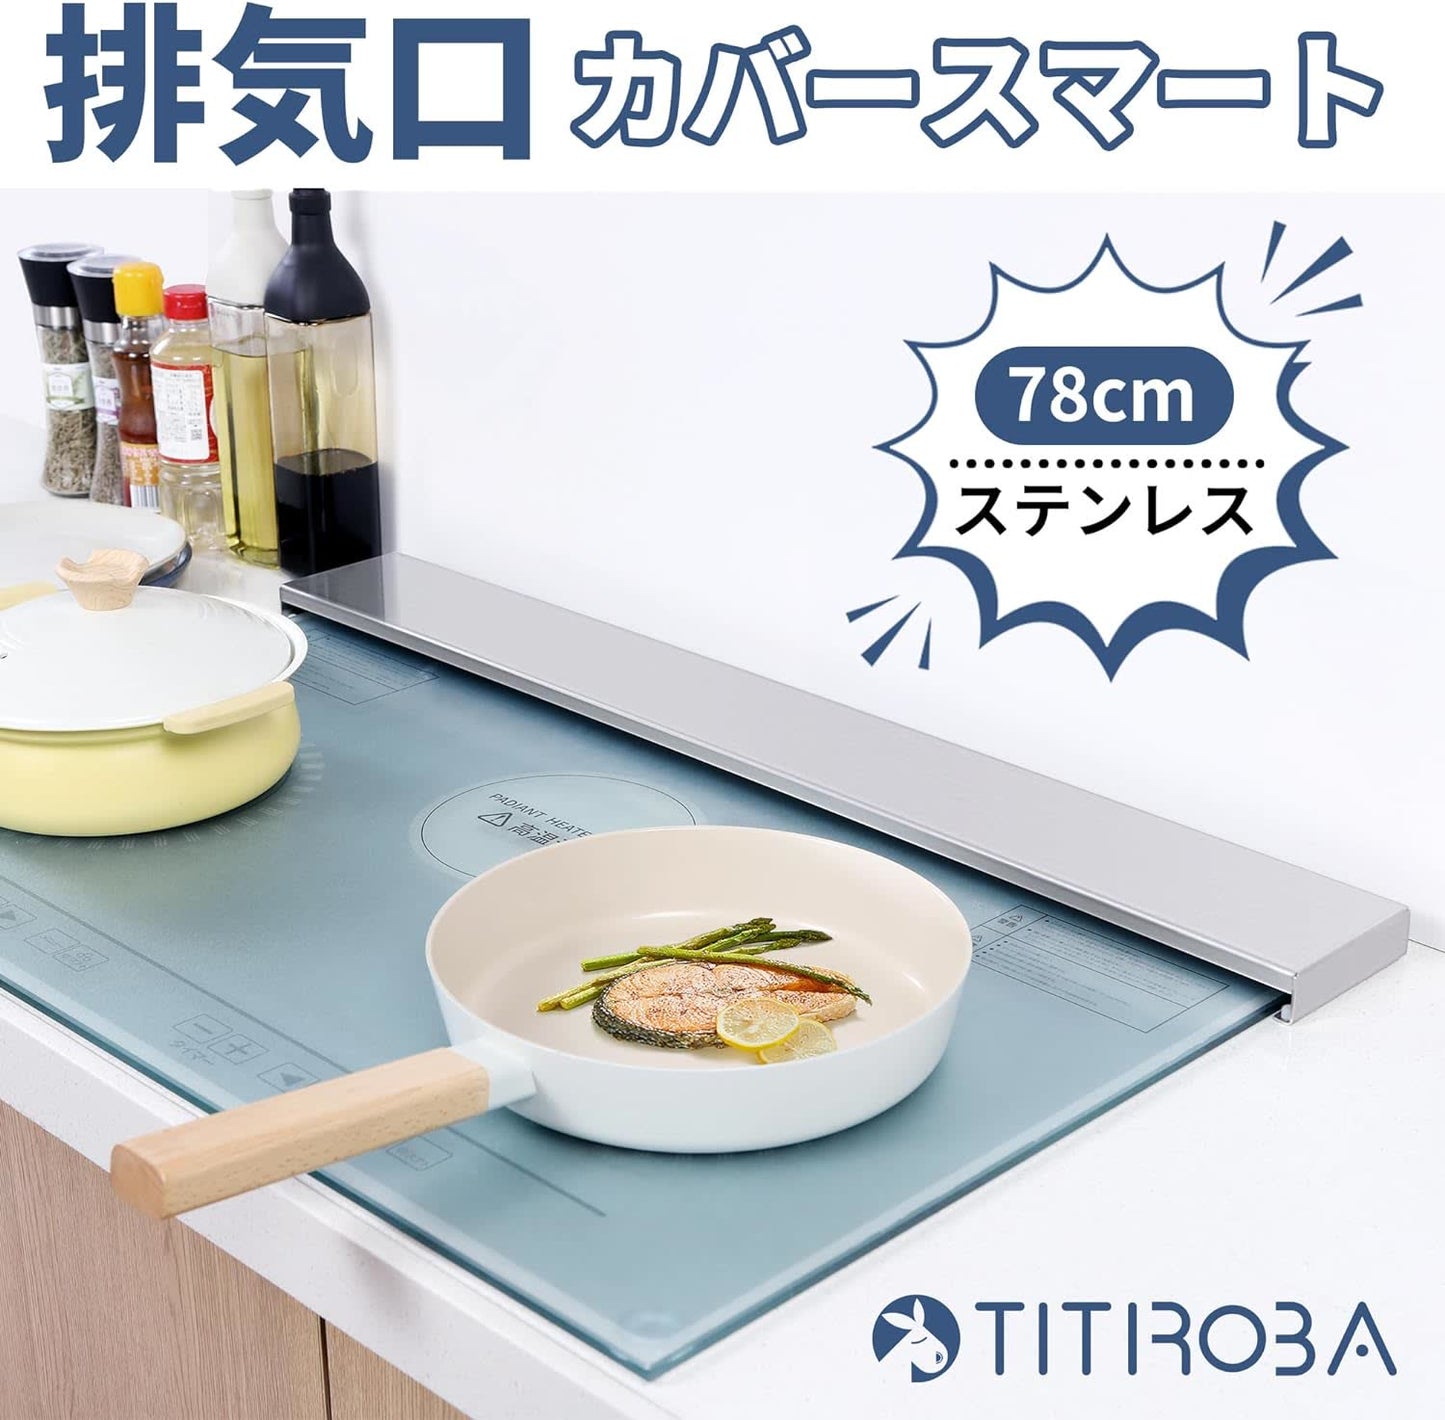 TITIROBA 排気口カバー 75cm 薄型